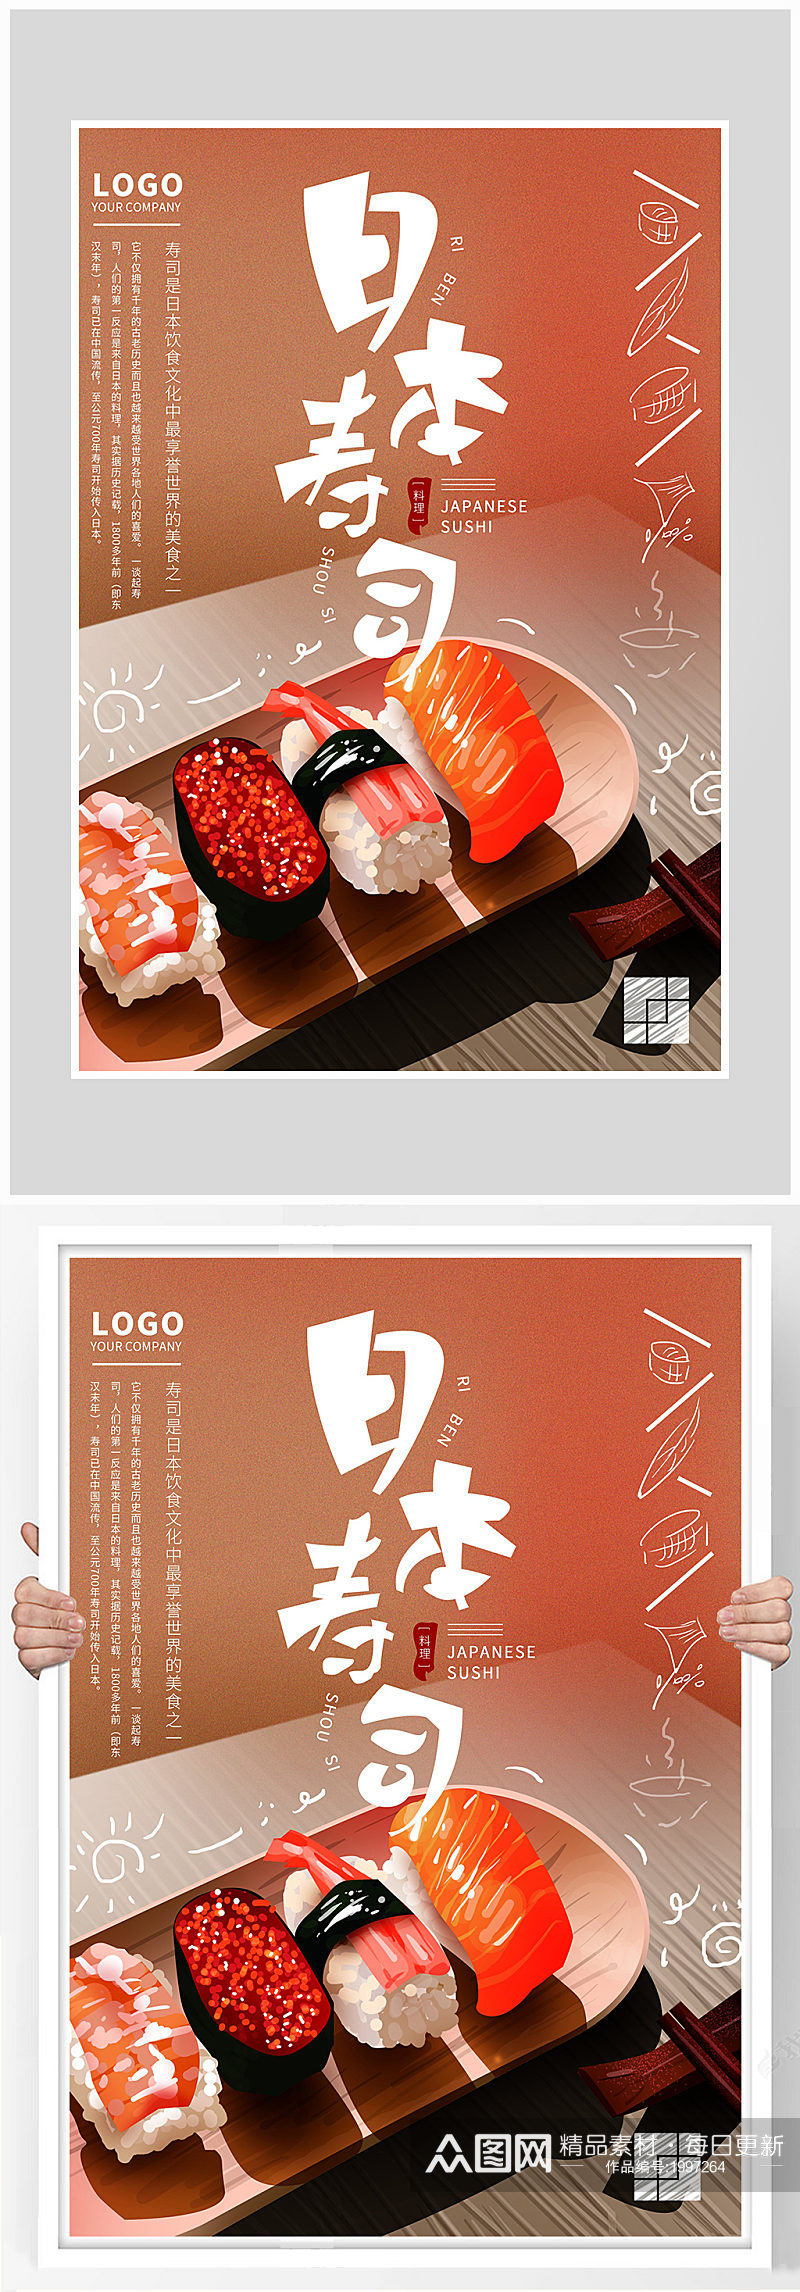 创意质感日本寿司料理海报设计素材